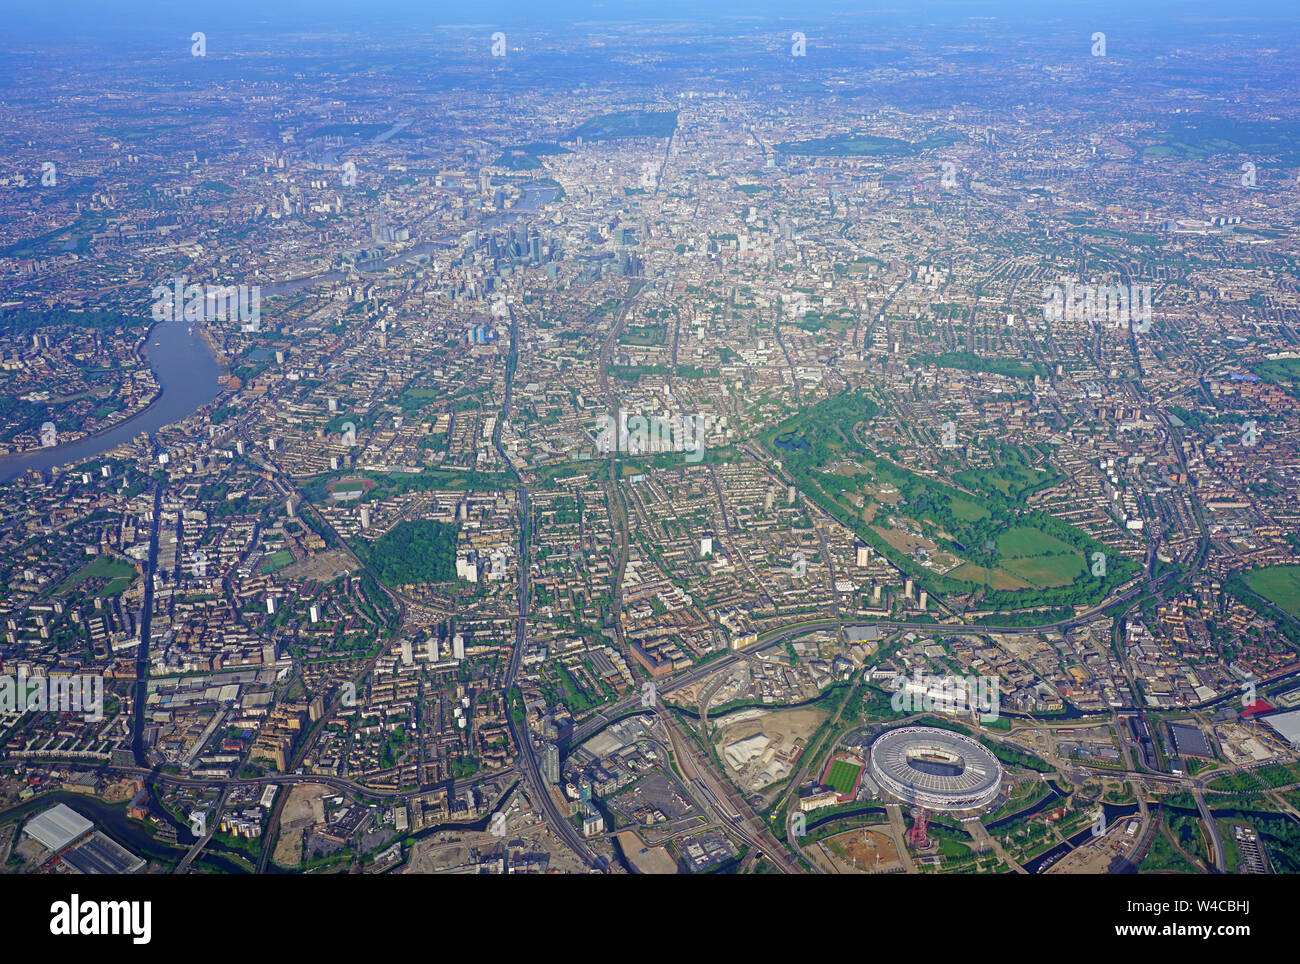 LONDON, ENGLAND-2 JUN 2019 - Luftbild der Großraum London in der Nähe des Queen Elizabeth Olympic Park und London Stadium, die Heimat von West Ham United Stockfoto